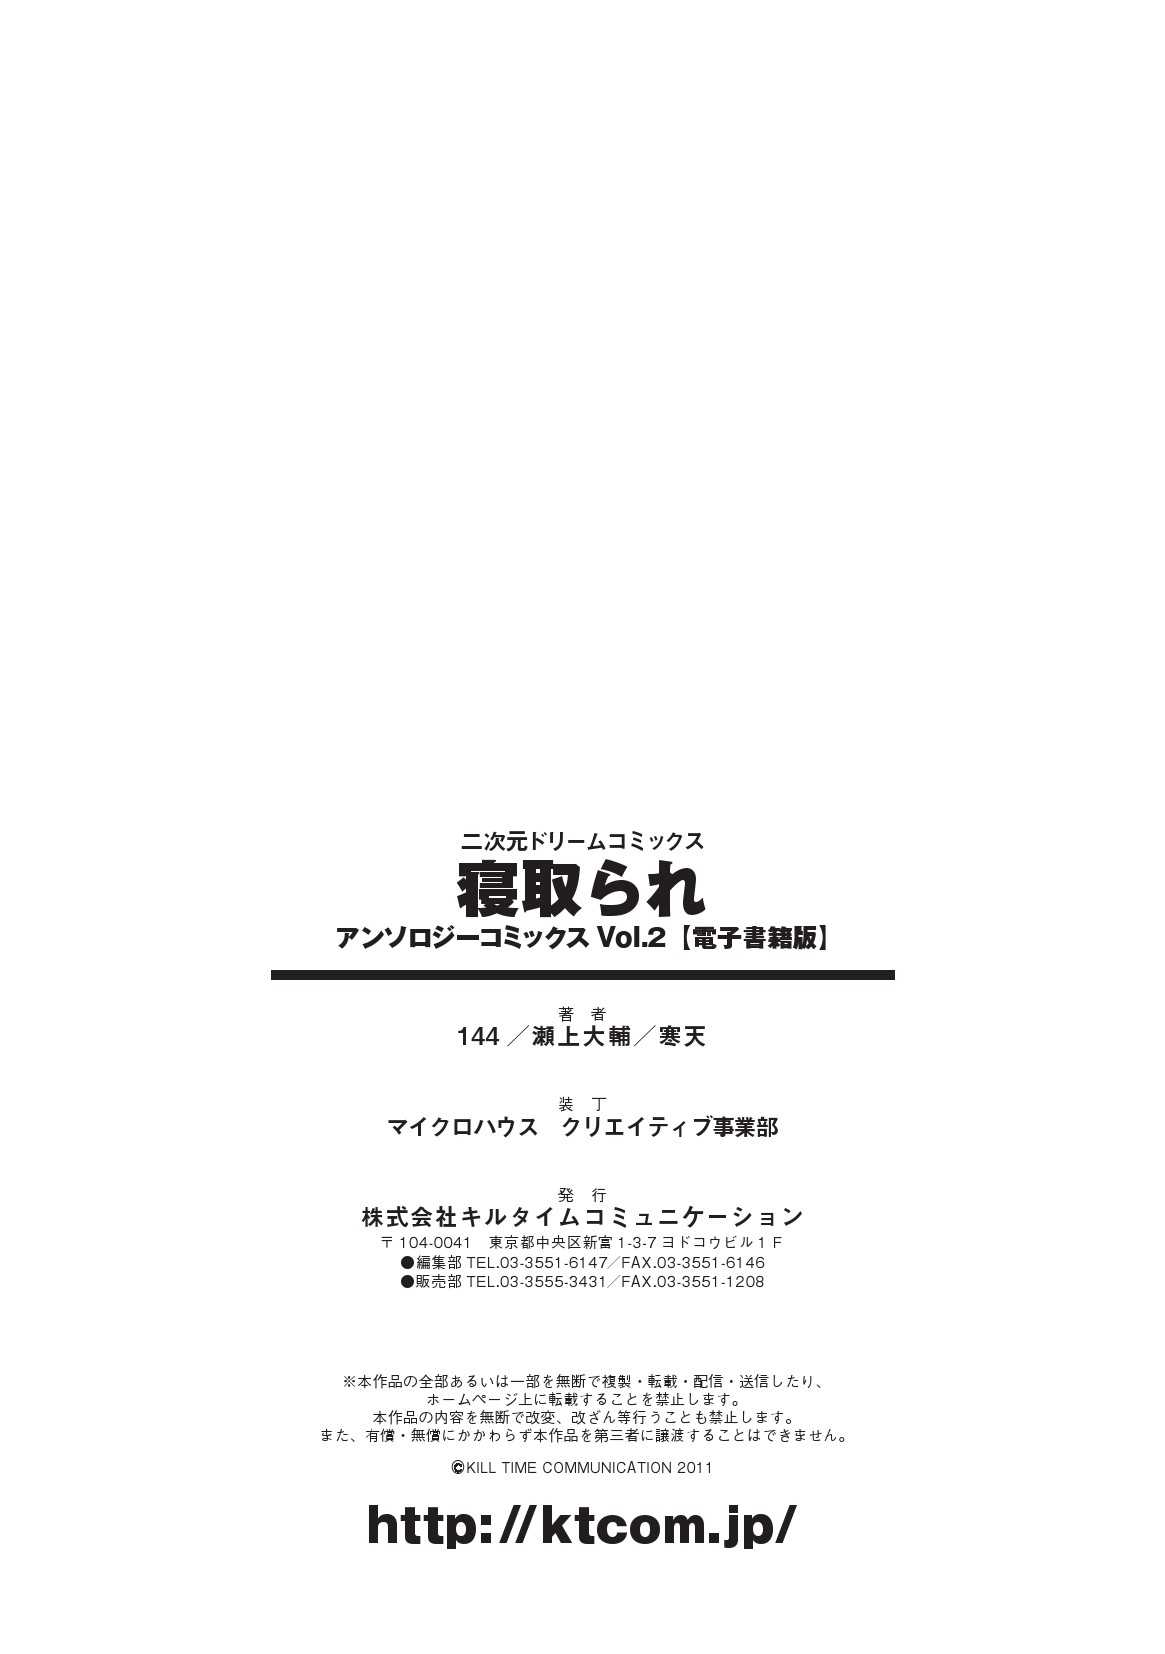 [Anthology]  Netorare Vol.2 Digital [アンソロジー] 寝取られ アンソロジーコミックス Vol.2 デジタル版